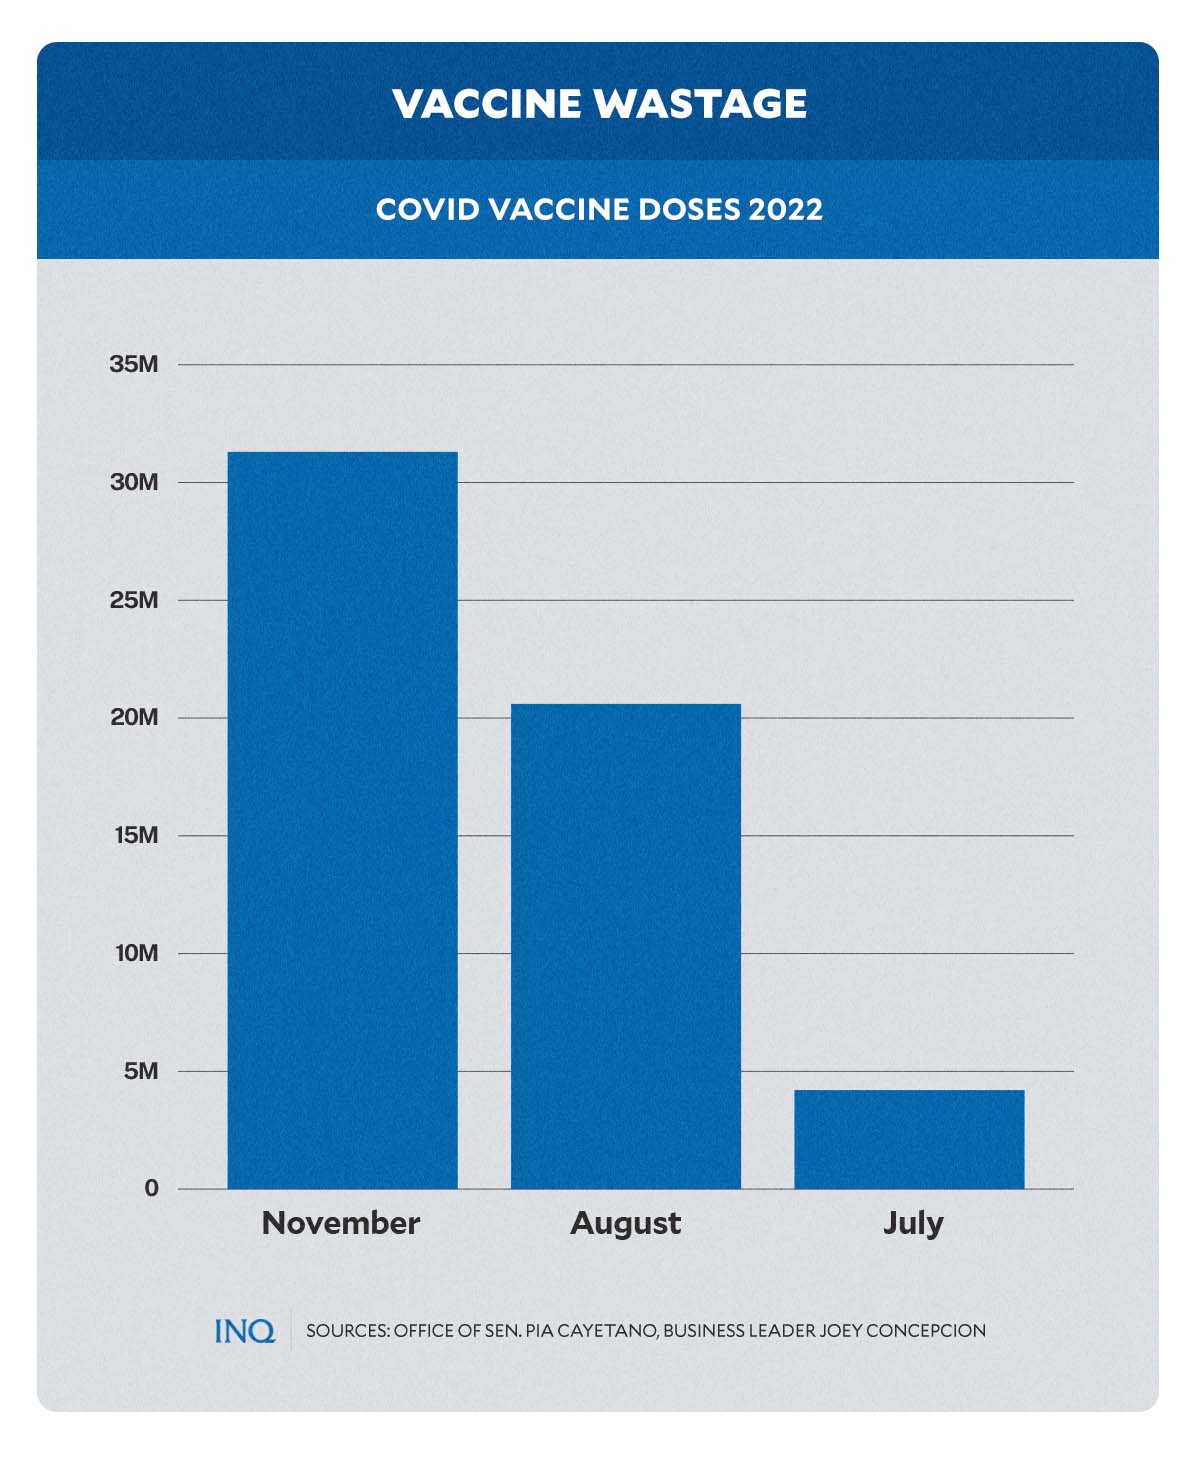 Vaccine wastage